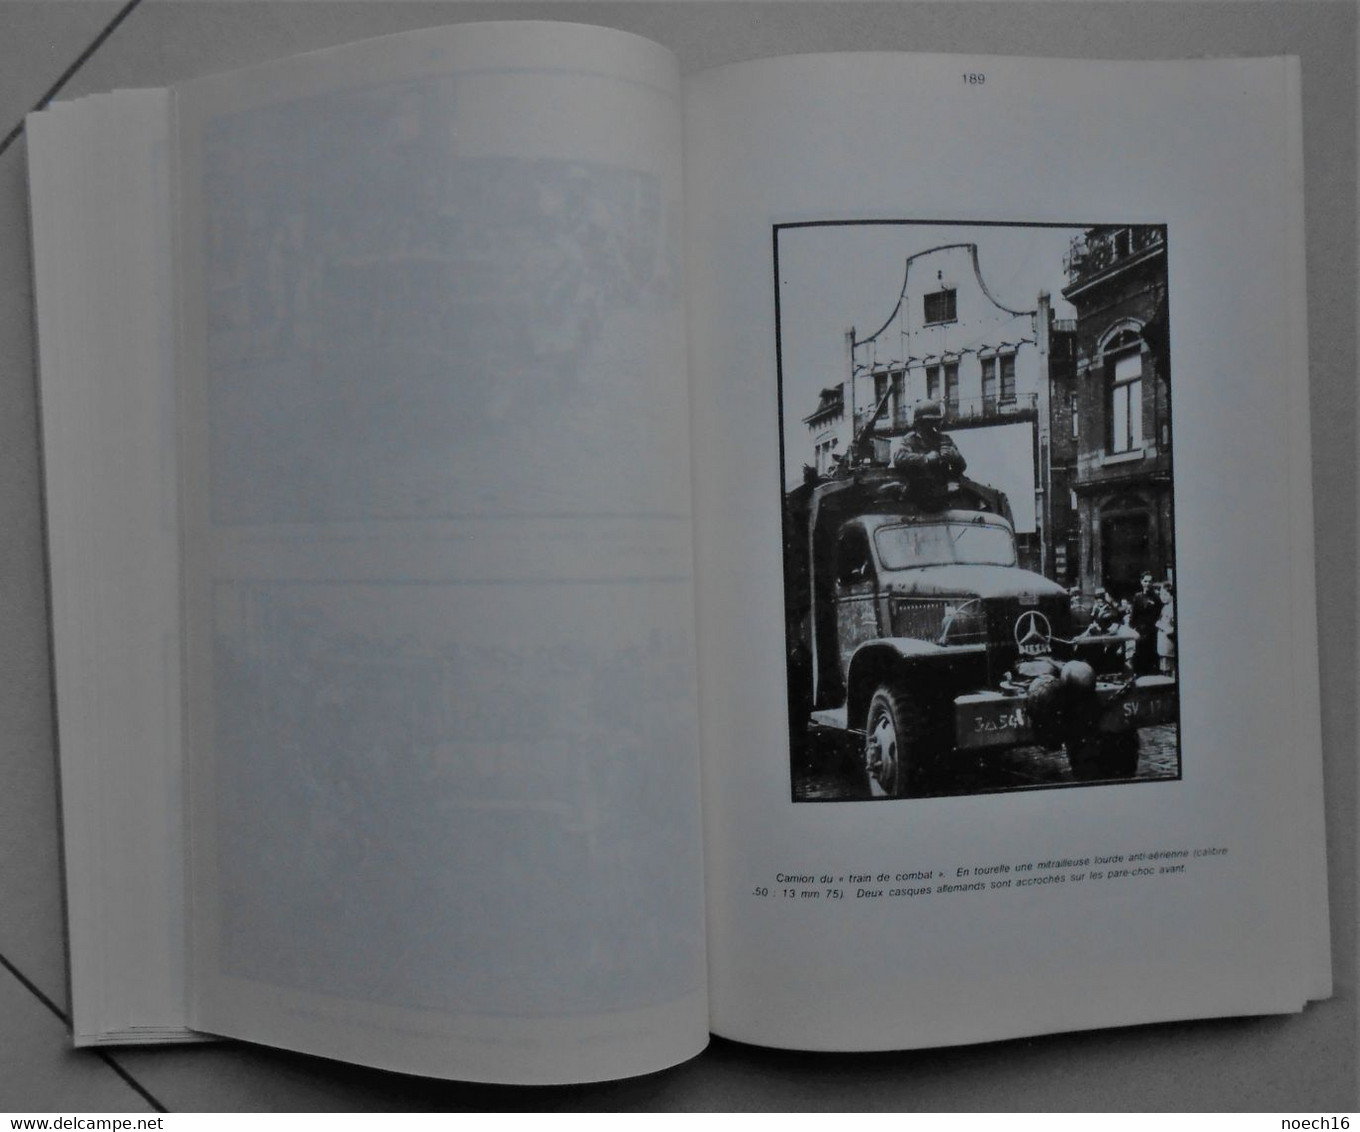 livre - Il y a trente ans - La libération de Charleroi - André Neufort 1977